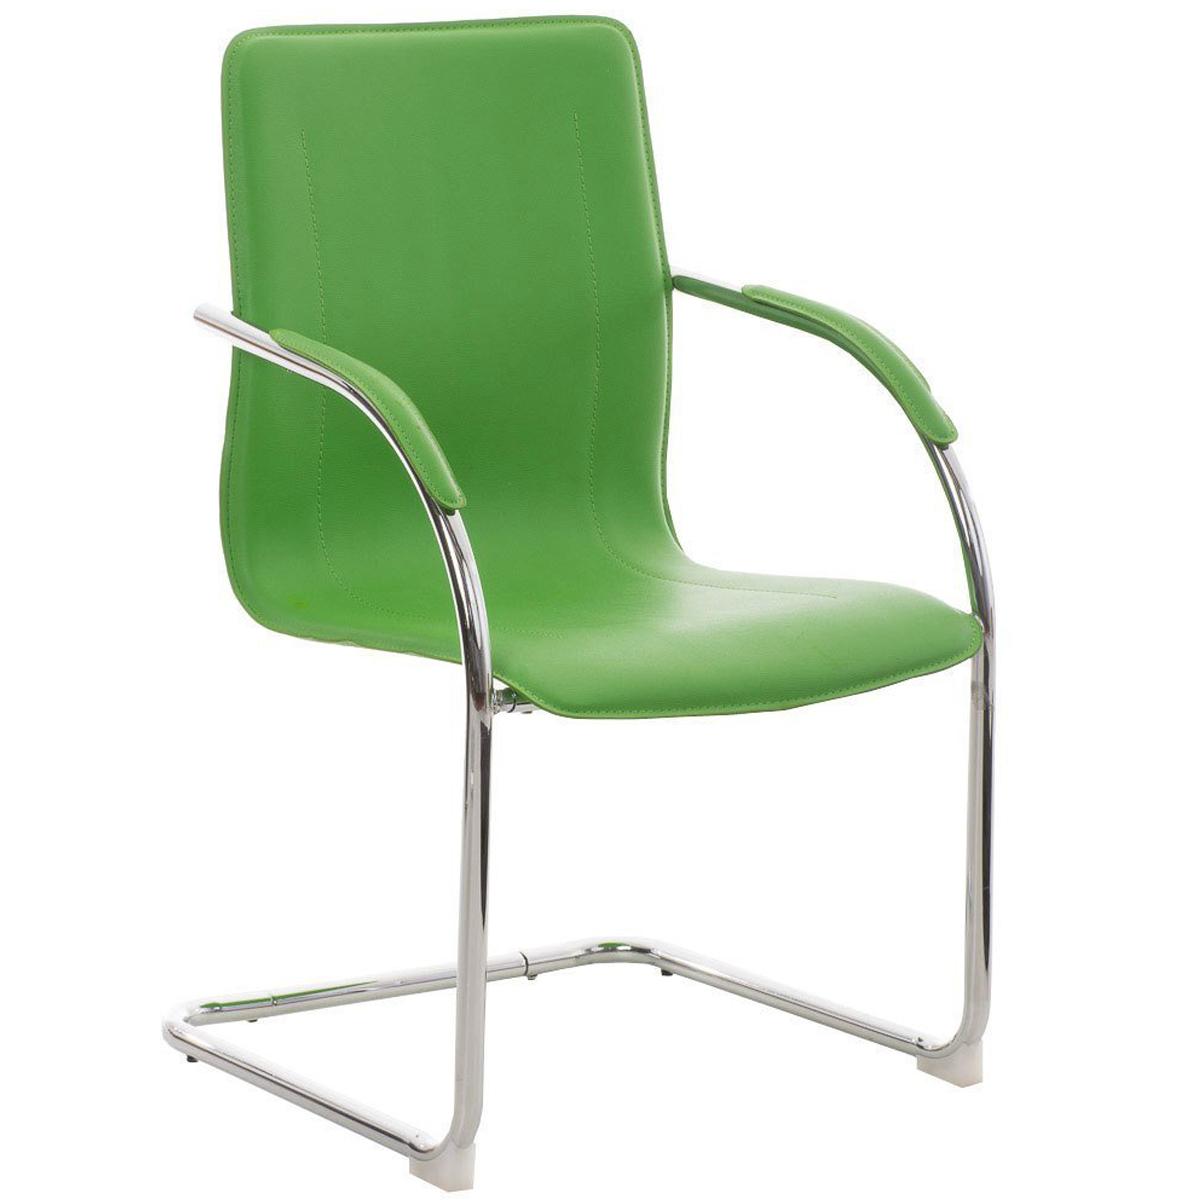 Cadeira de Visita FLAP, Estrutura Metálica, Design Moderno, Em Pele, Cor Verde